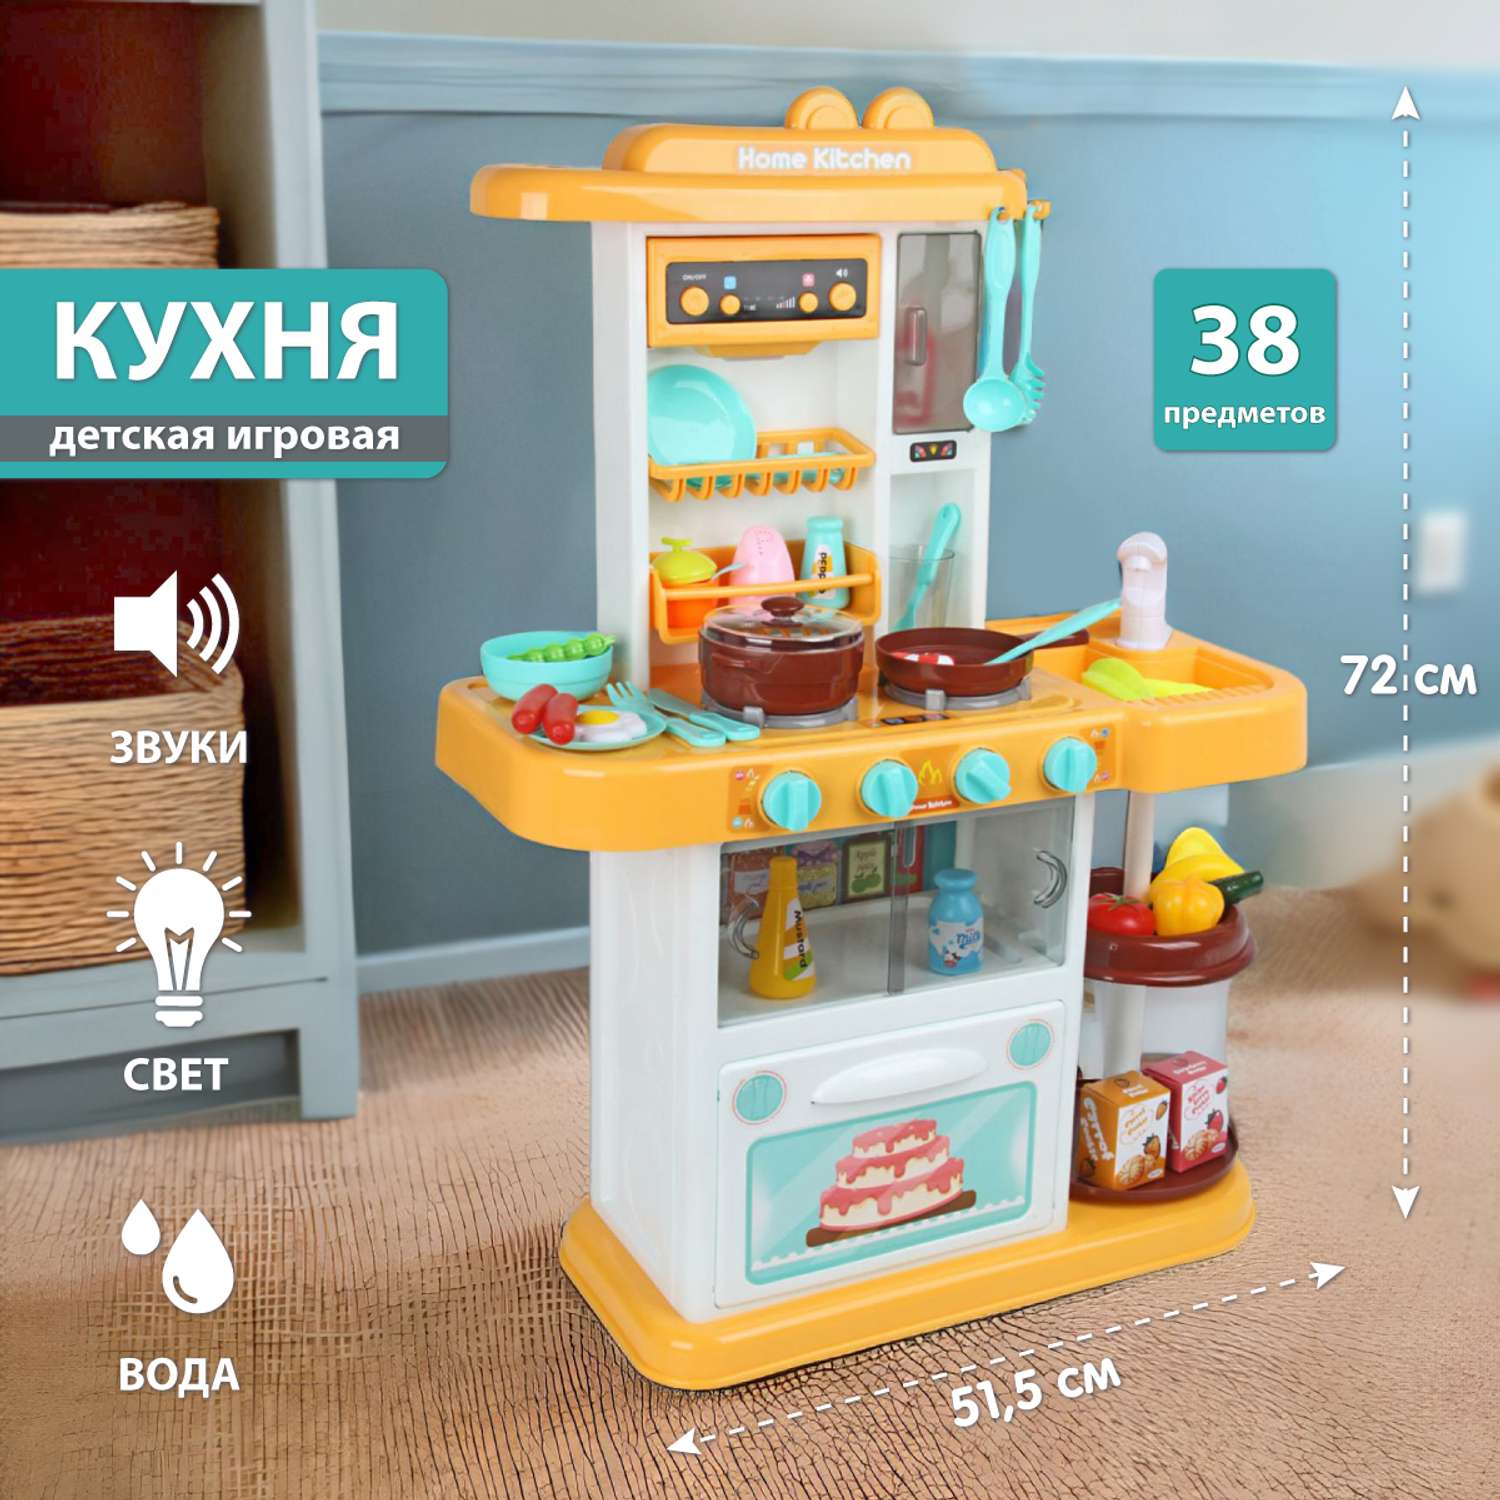 Детские кухни – купить игрушечную кухню в Украине на irhidey.ru